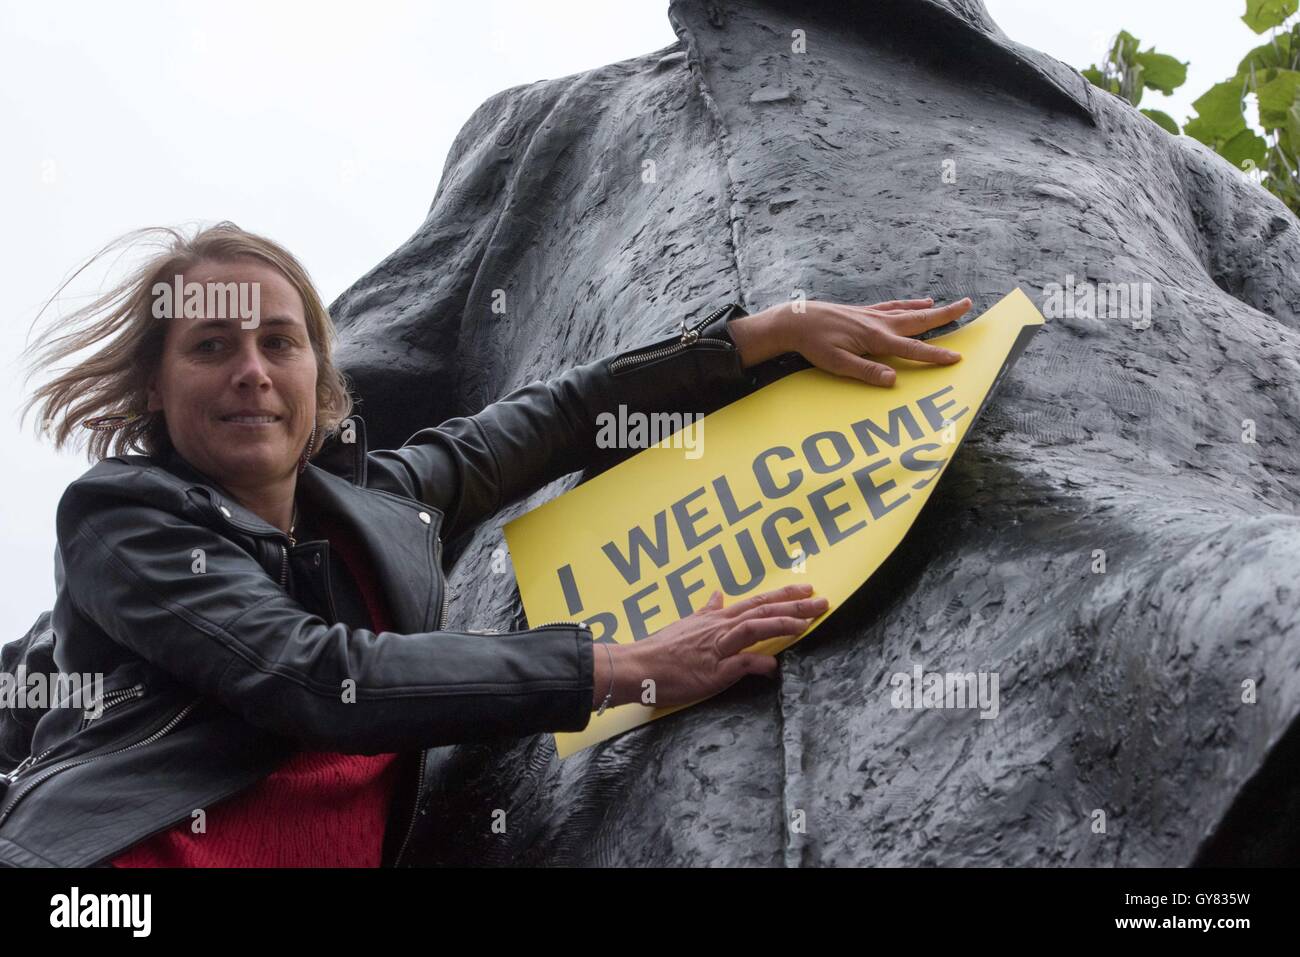 London, UK. 17. September 2016. Demonstrant versucht, fügen einen Banner auf der Statue von Churchill in Parliament Square zu einer Kundgebung auf "Flüchtlings willkommen" Credit: Ian Davidson/Alamy Live News Stockfoto